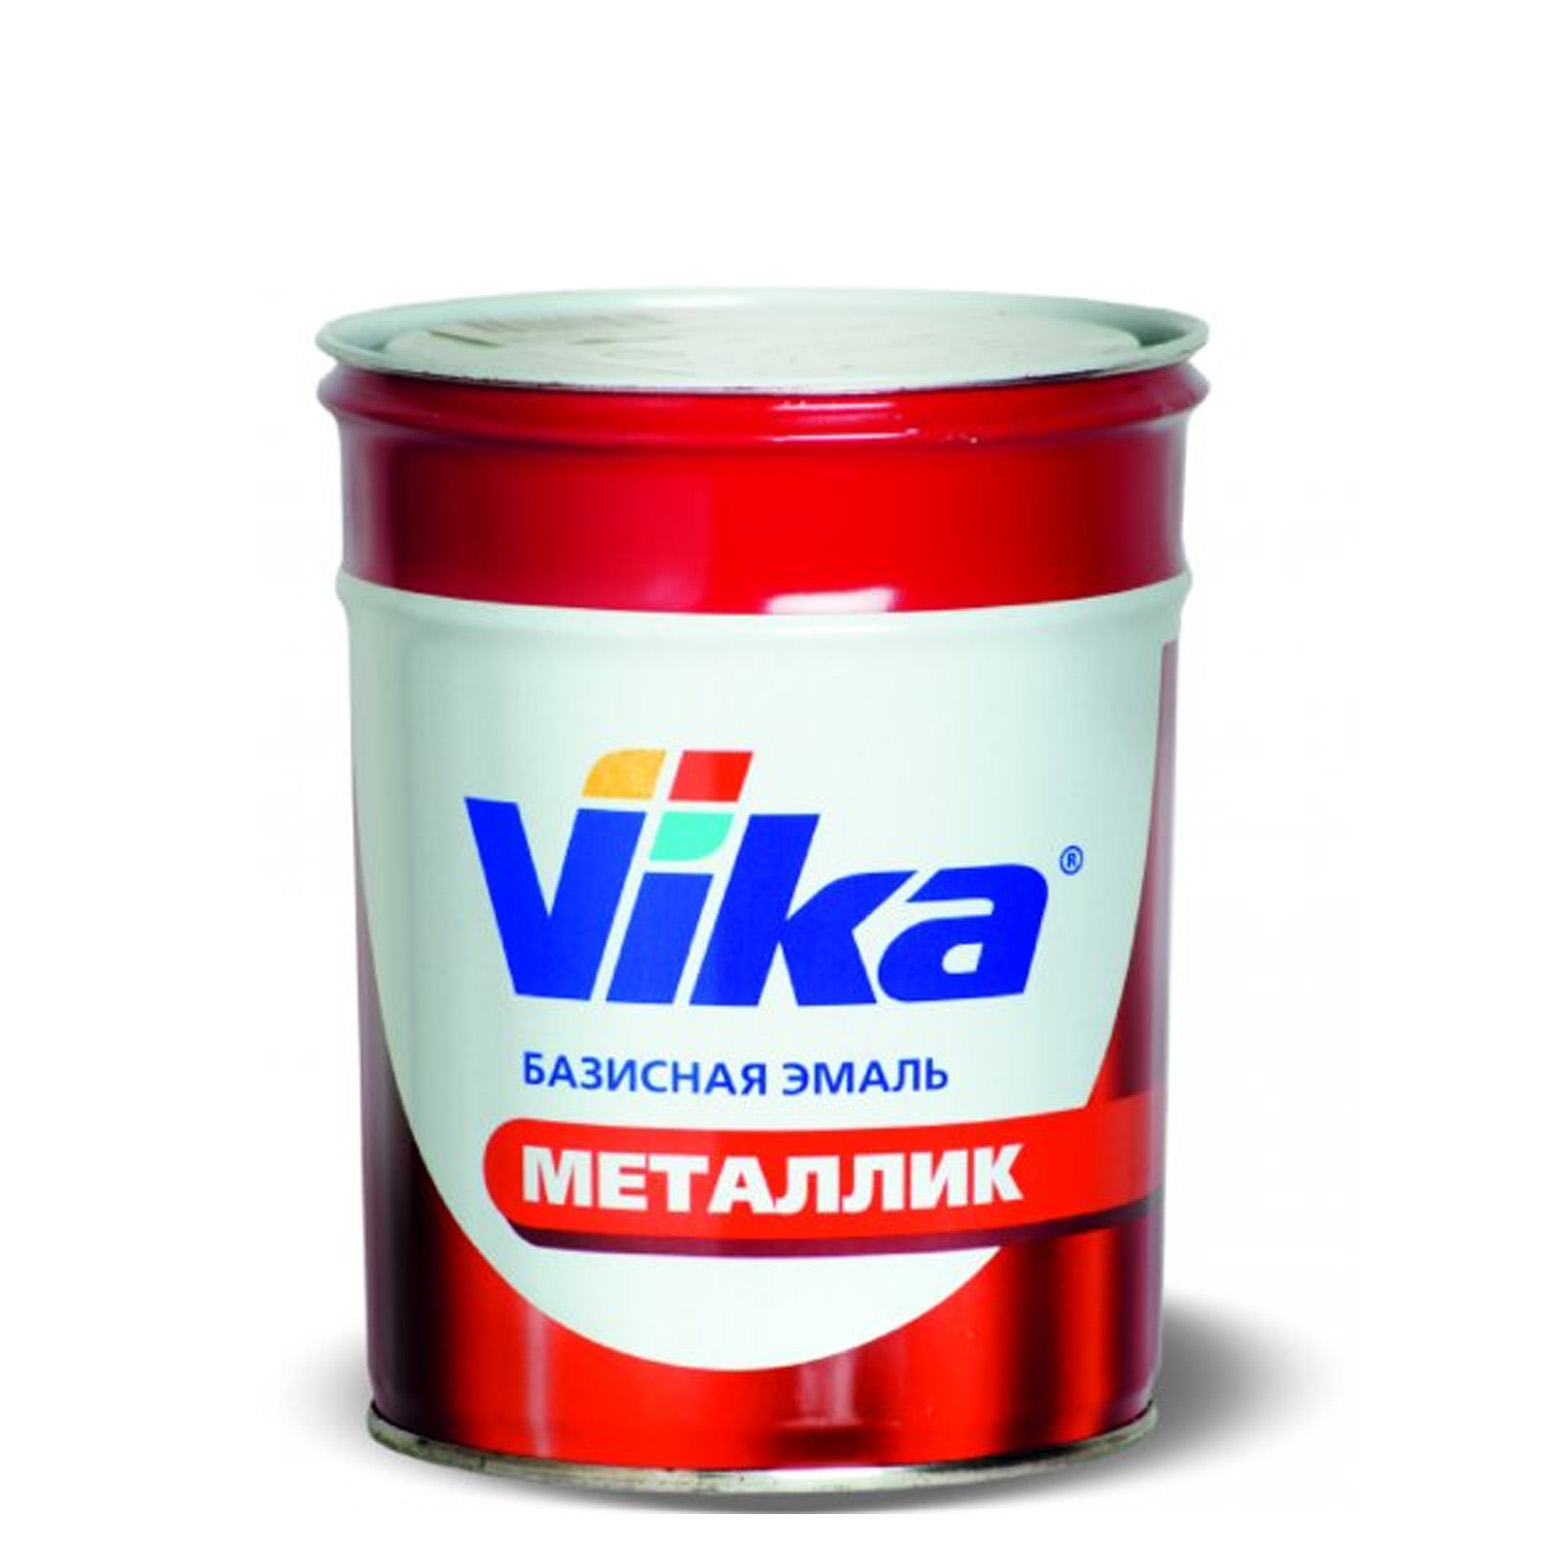 Фото 1 - Автоэмаль Металлик, цвет 242 Серый базальт, профессиональная базовая, - 0,9 кг Vika/Вика.